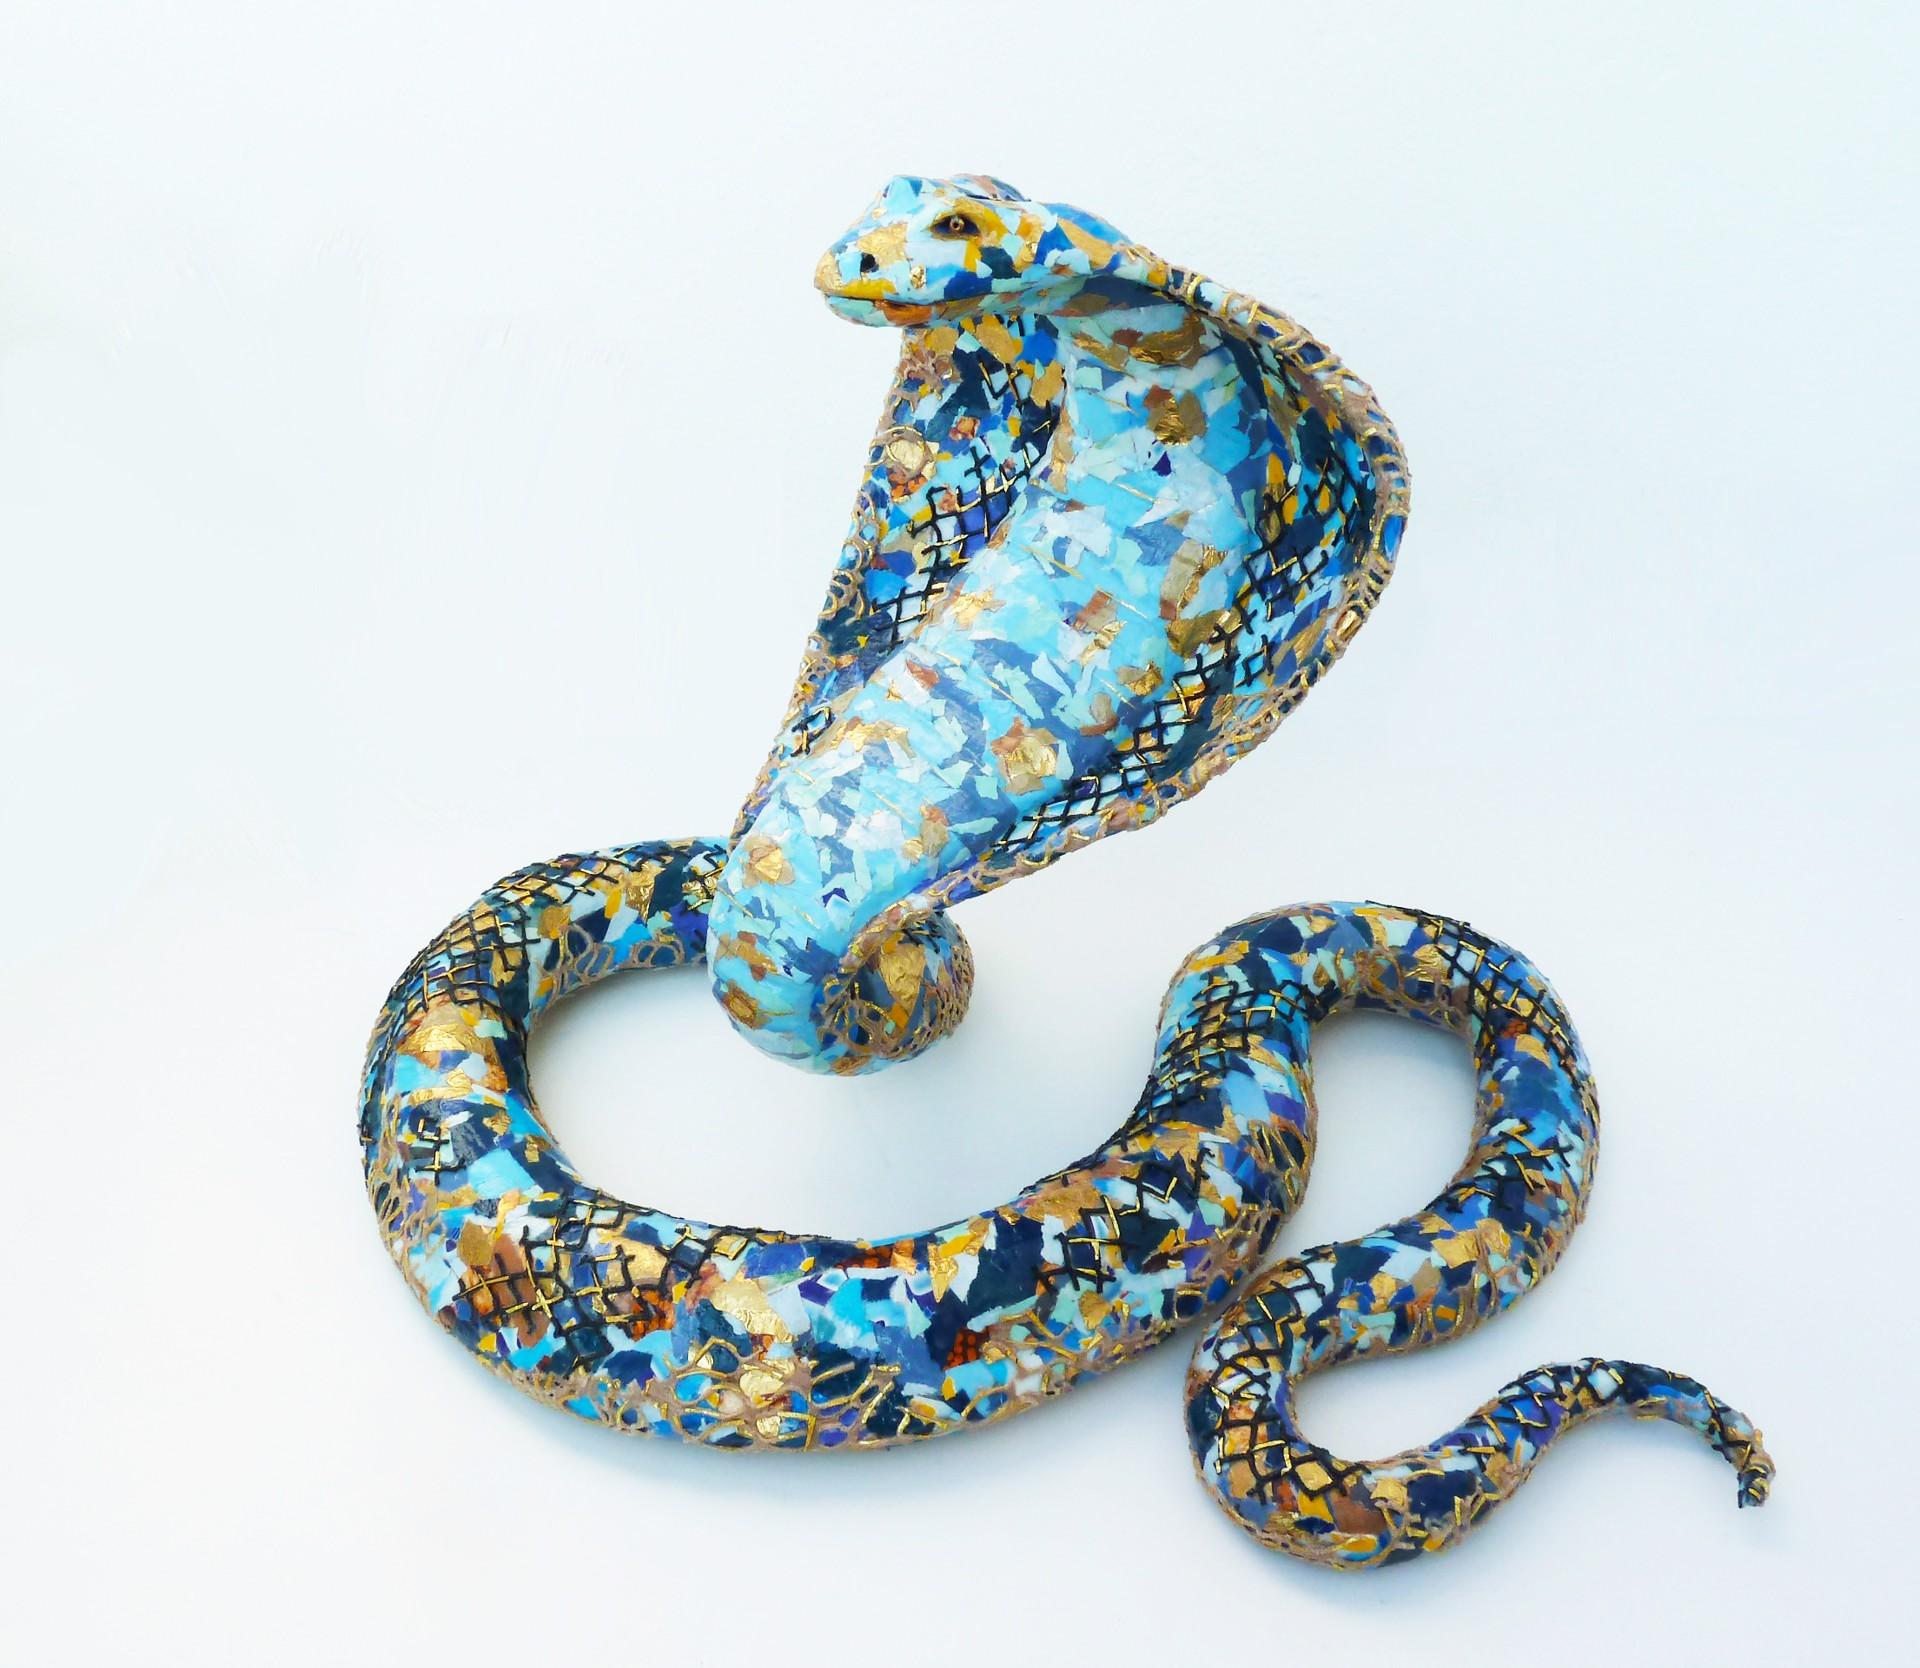 Kara the Cobra - Contemporary Snake Sculpture Upcylced Materials  (Blau + Gold)